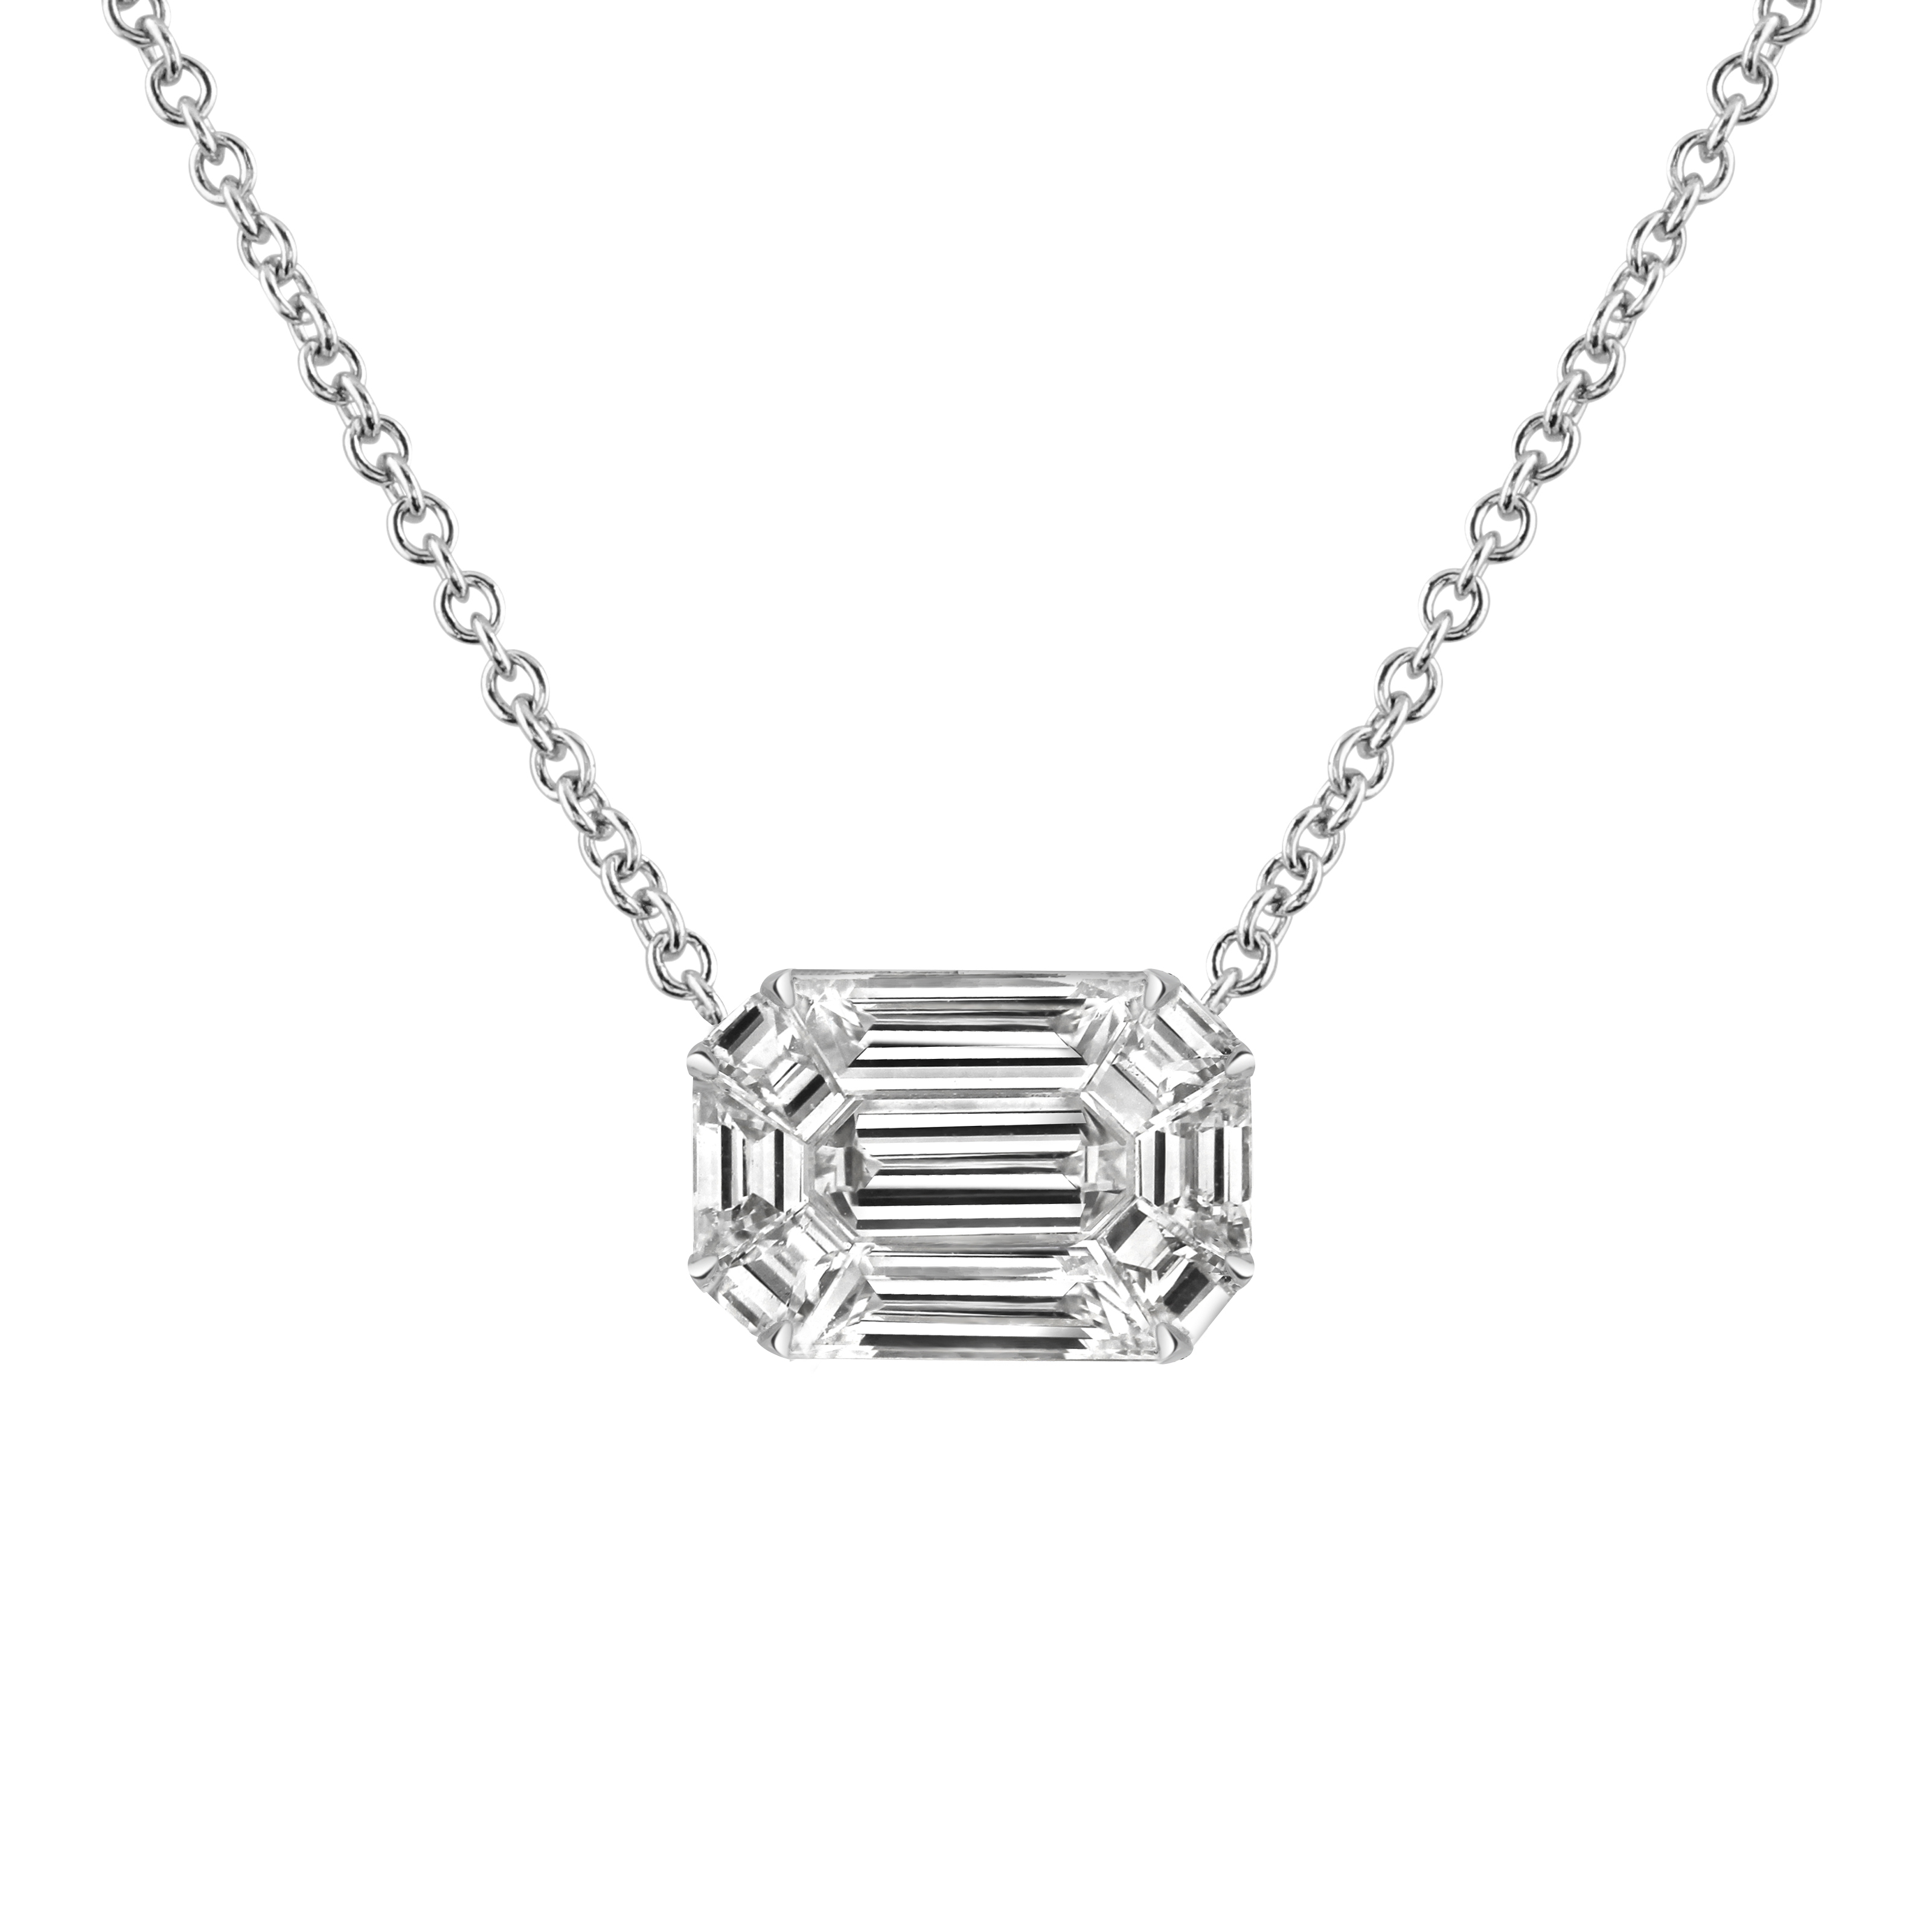 Emerald Cut Diamond Pendant